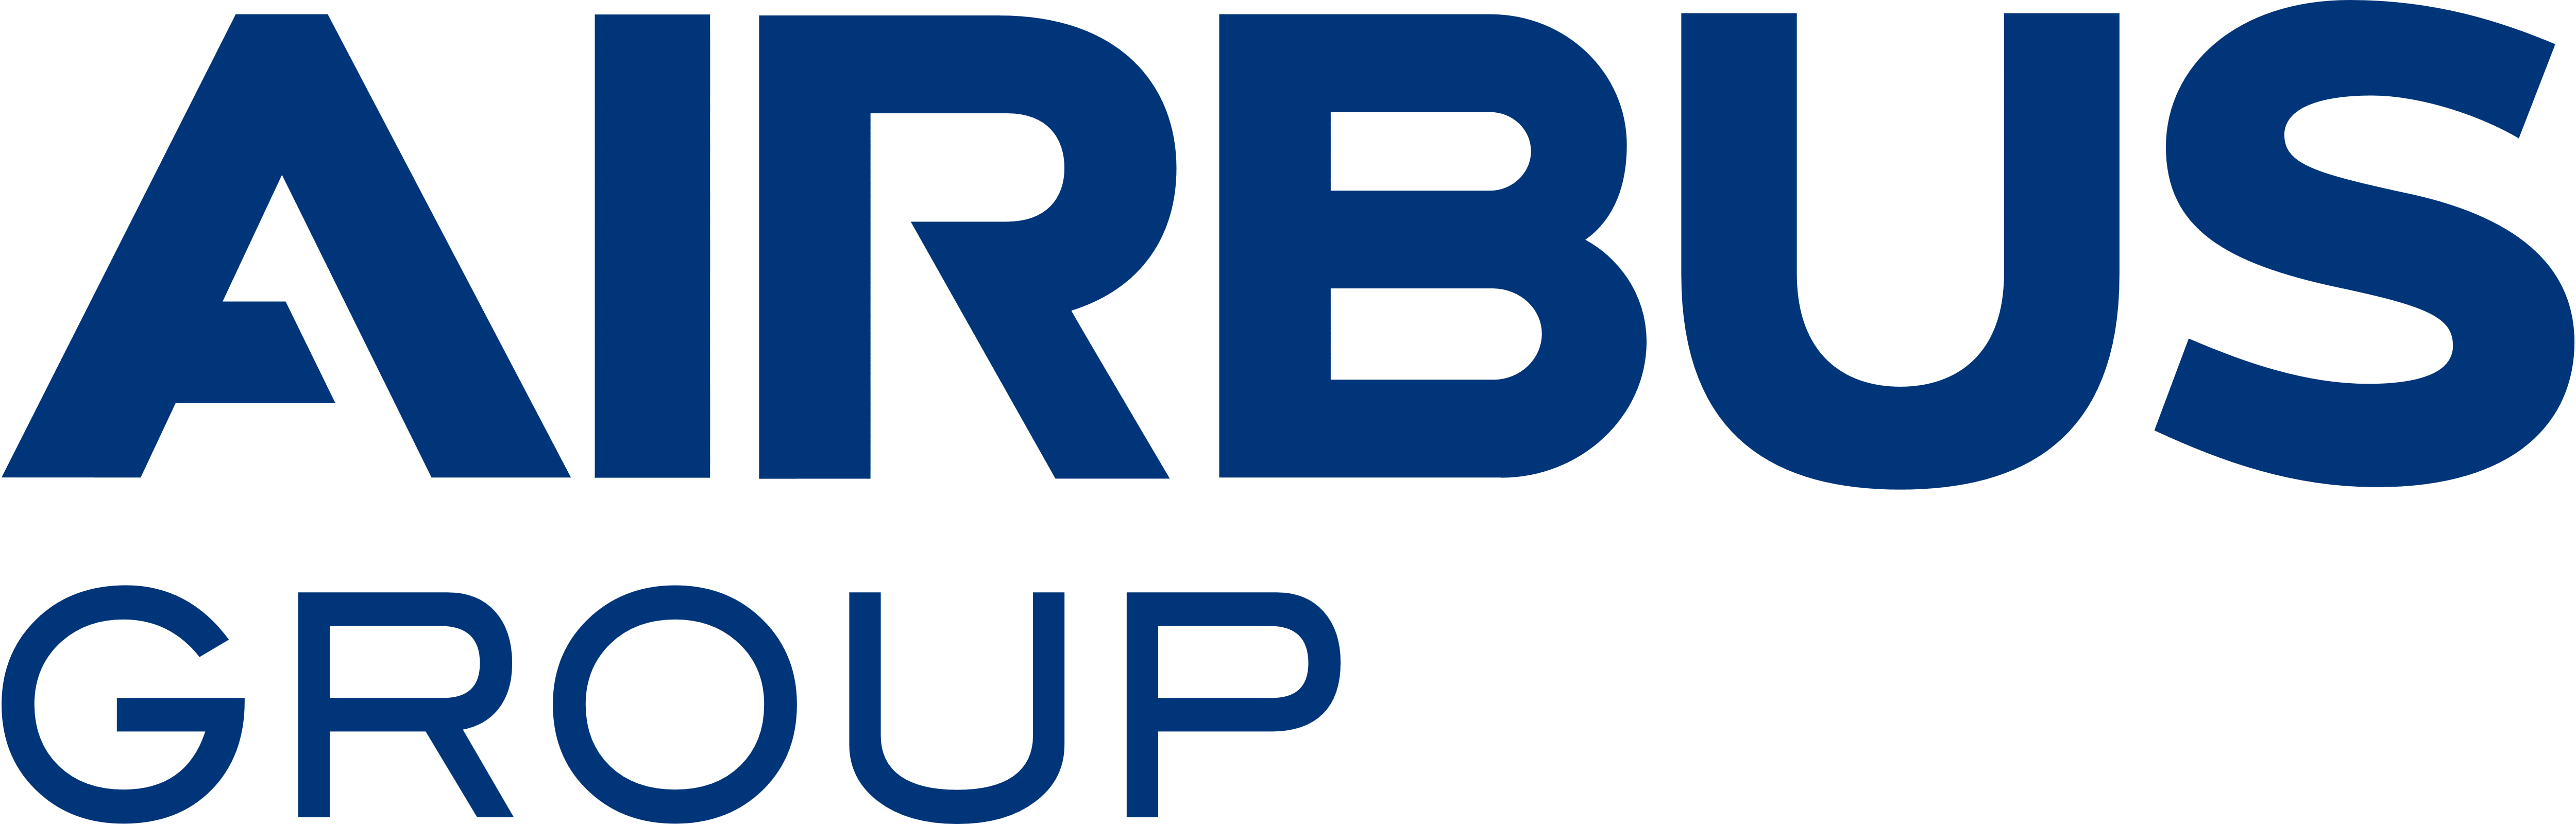 Airbus Logo - Airbus Group – Logos Download